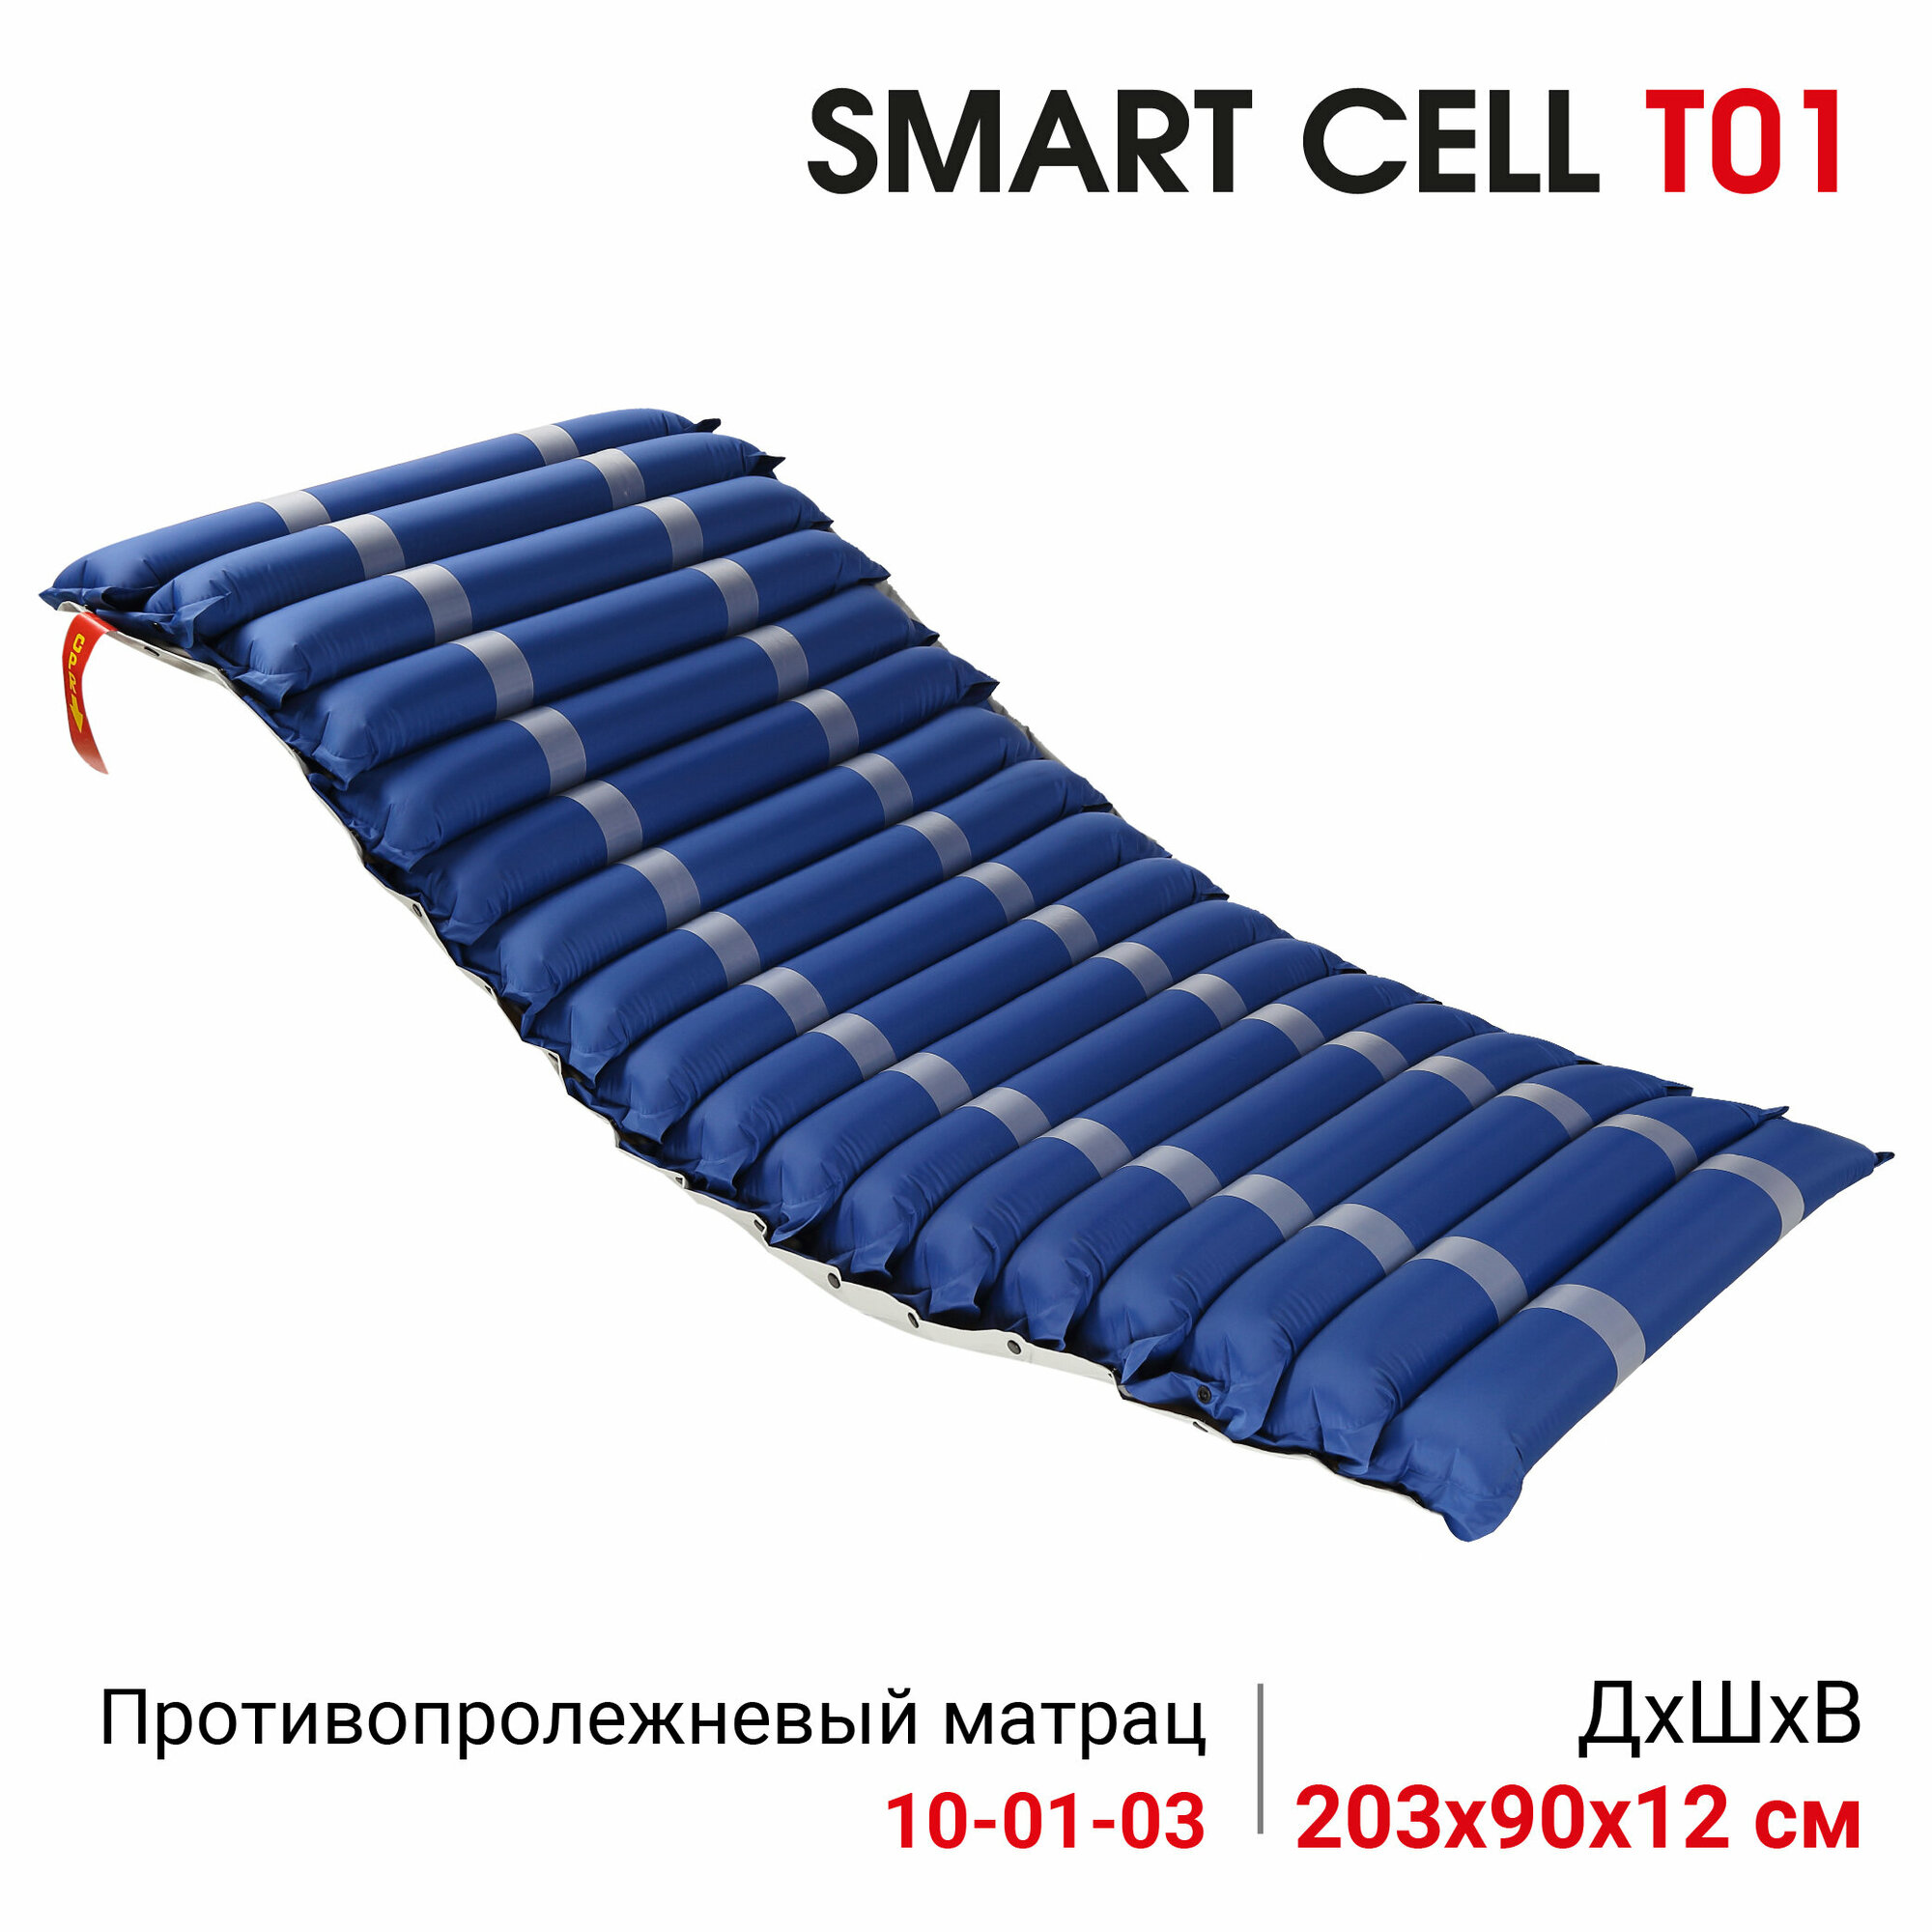 Система противопролежневая трубчатая с компрессором и режимом статик Ortonica Smart Cell T 01 до 150 кг Код ФСС 10-01-03